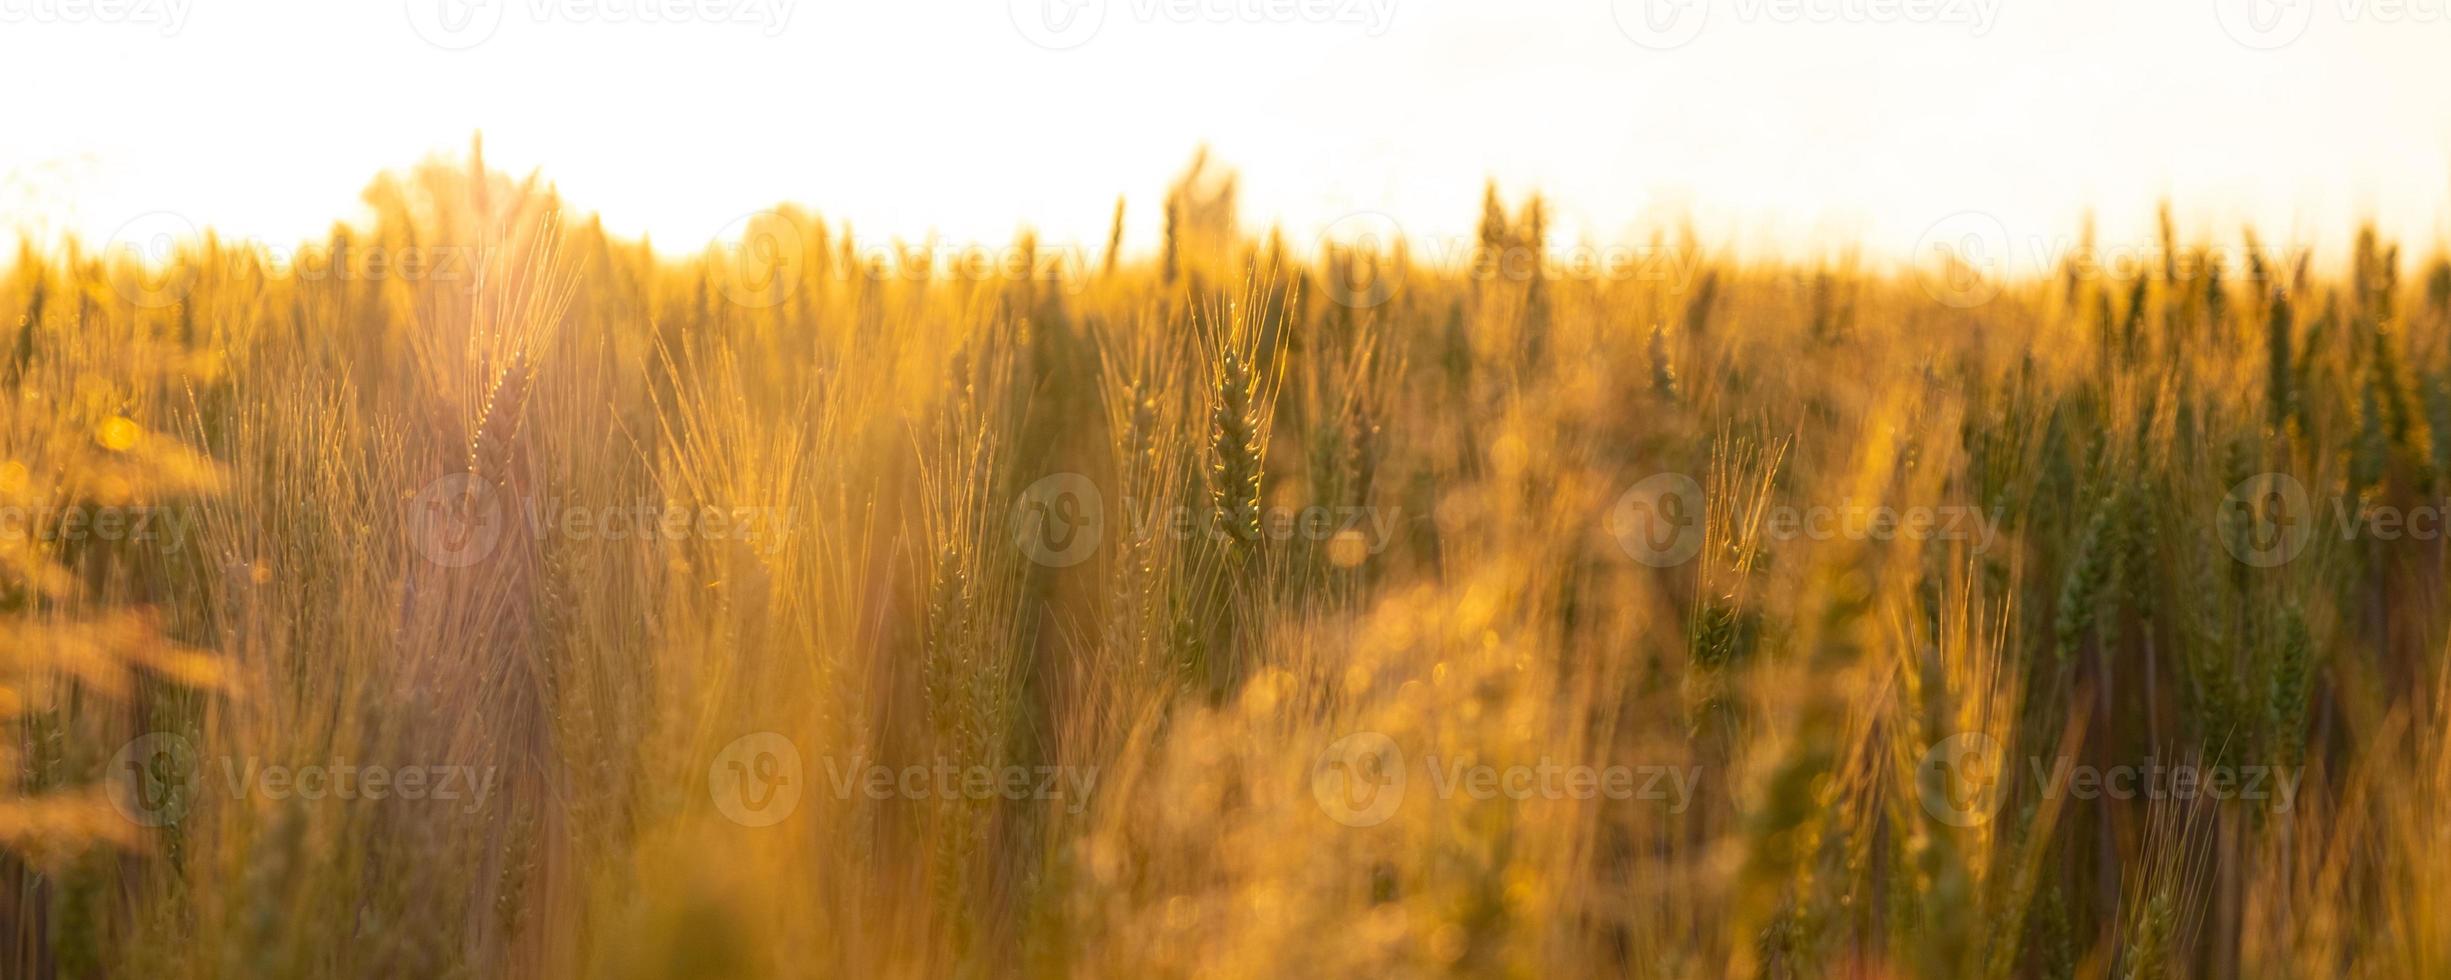 campo de trigo sob os raios do sol da manhã, espigas em laranja luz quente amanhecer foto